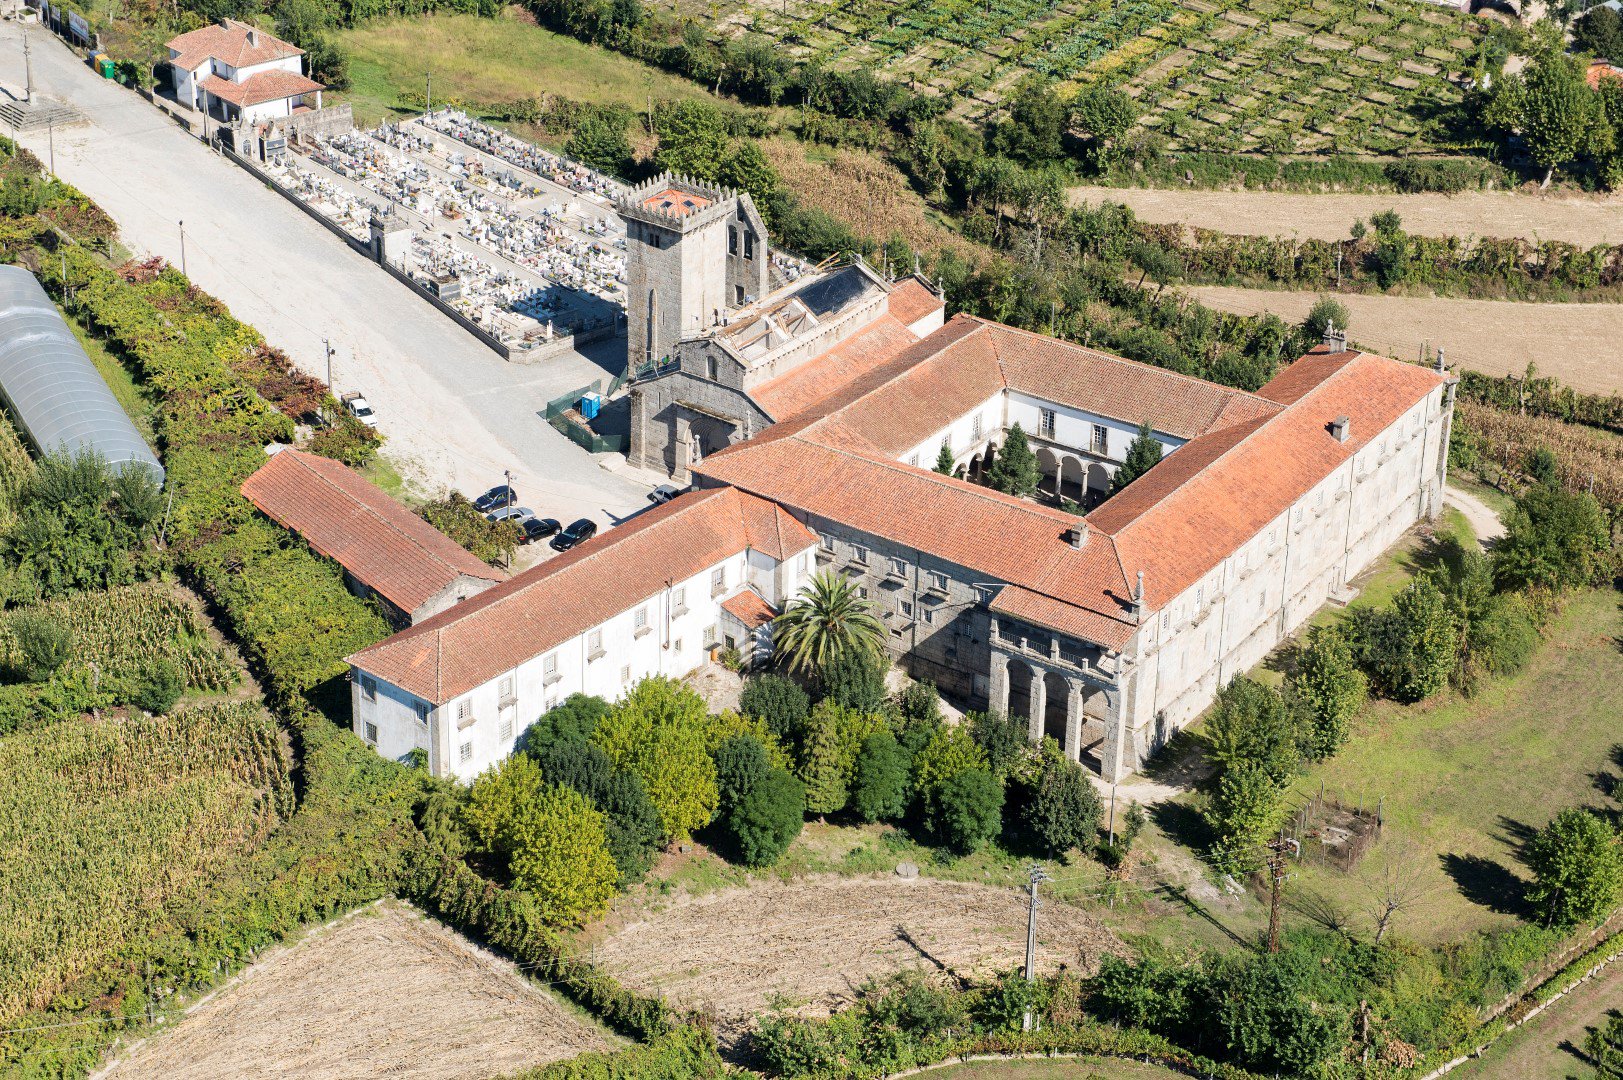 Appel d'offres public : contrat de concession de service d'exploitation touristique du Monastère de Travanca